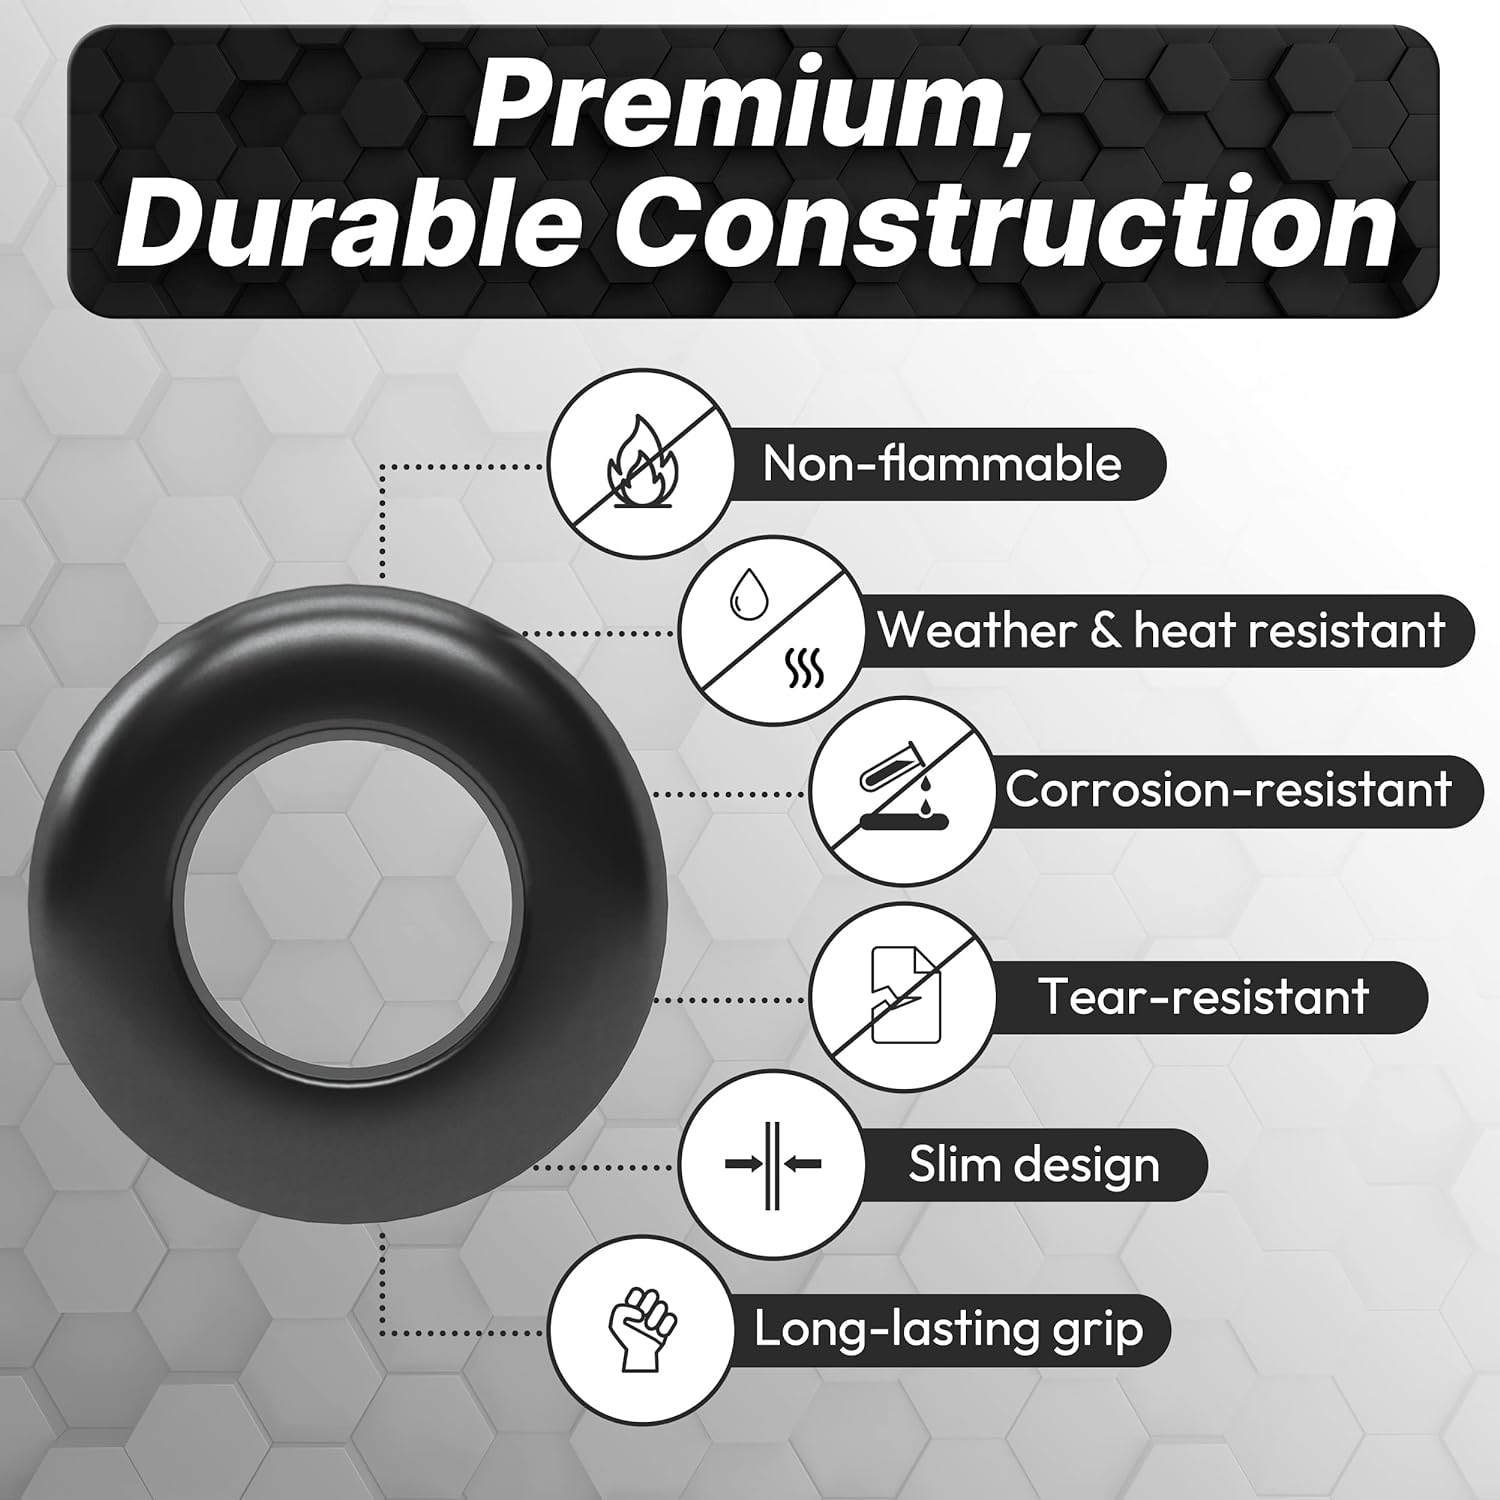 InstallGear 180pc Rubber Grommet Assortment Kit - 8 Sizes (1/4", 5/16", 3/8", 7/16", 1/2", 5/8", 7/8", 1